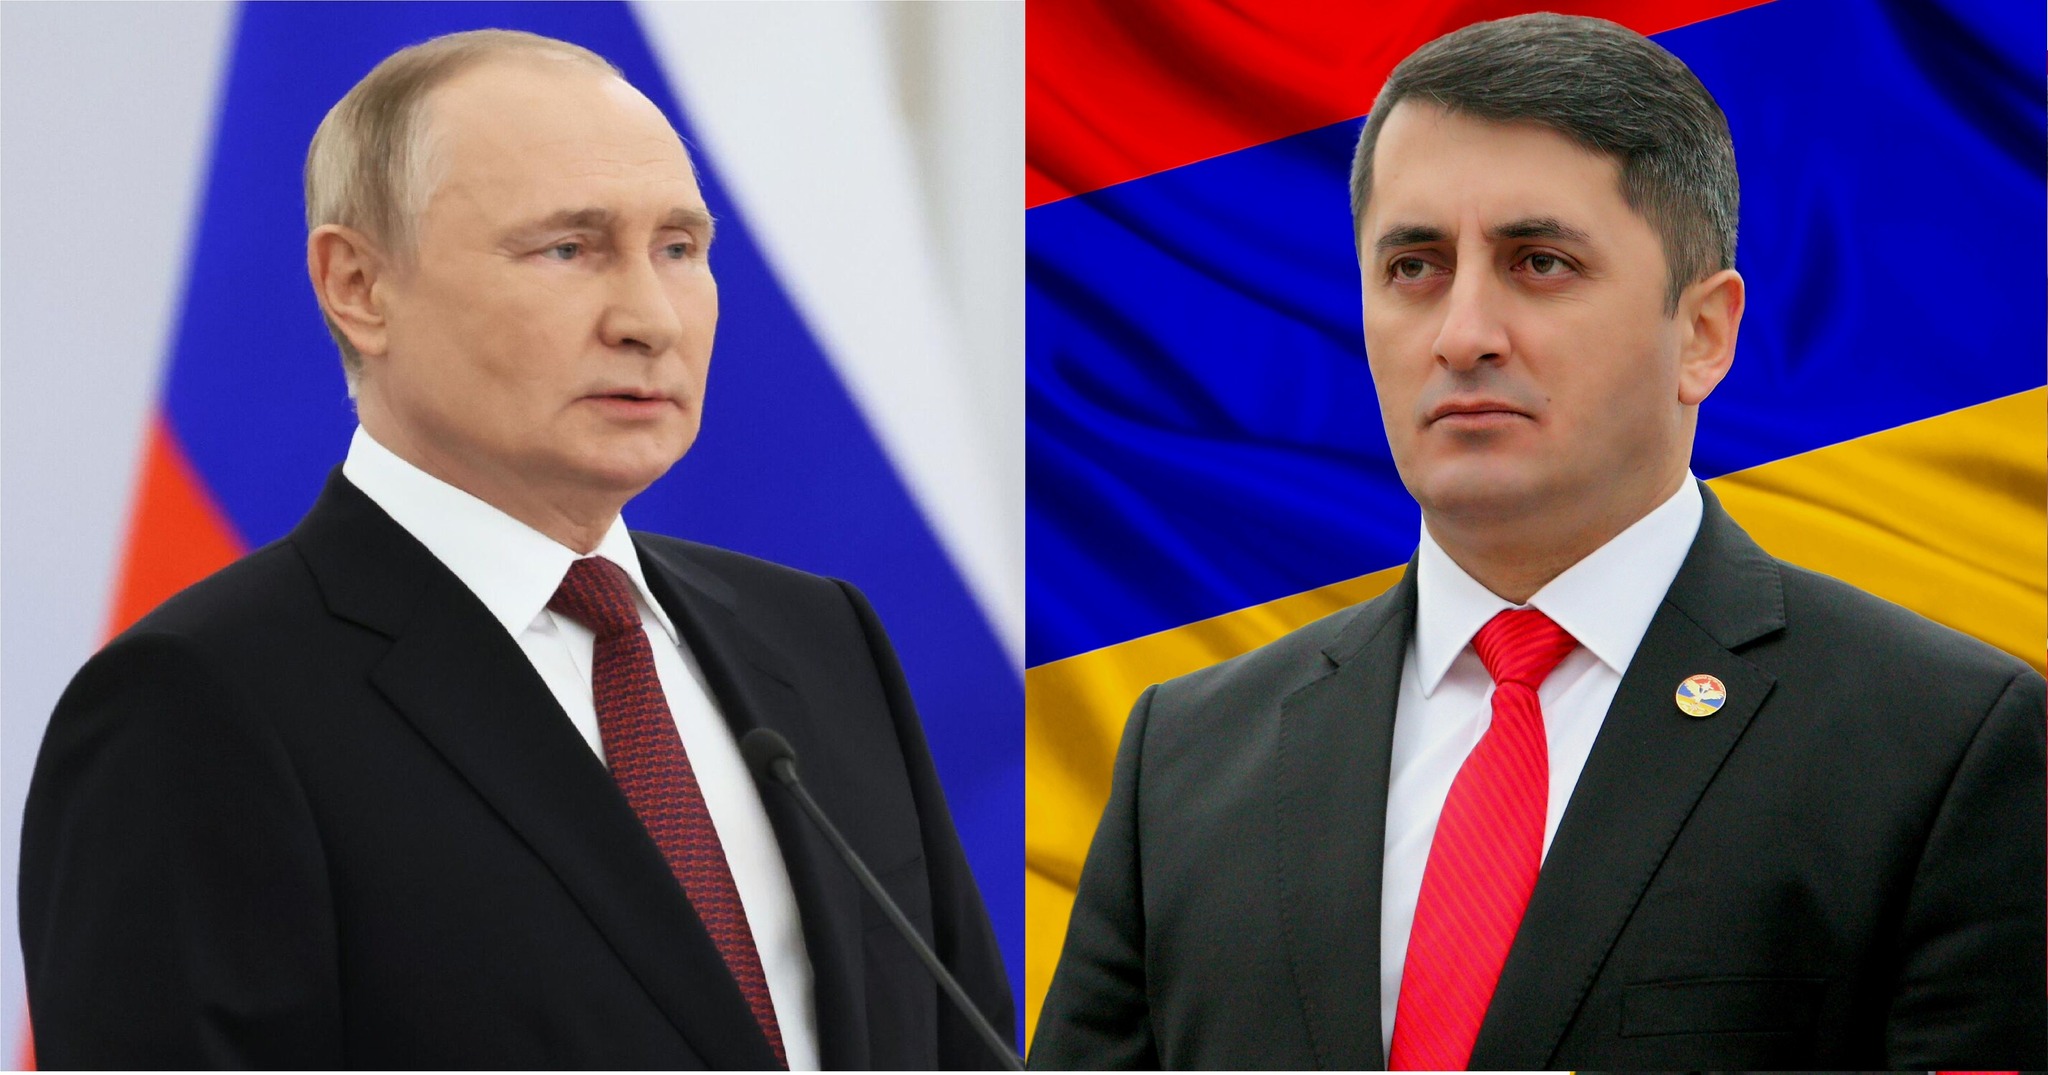 Спасти, защищать и развивать военно-политический союз Армения-Россия - Асрян